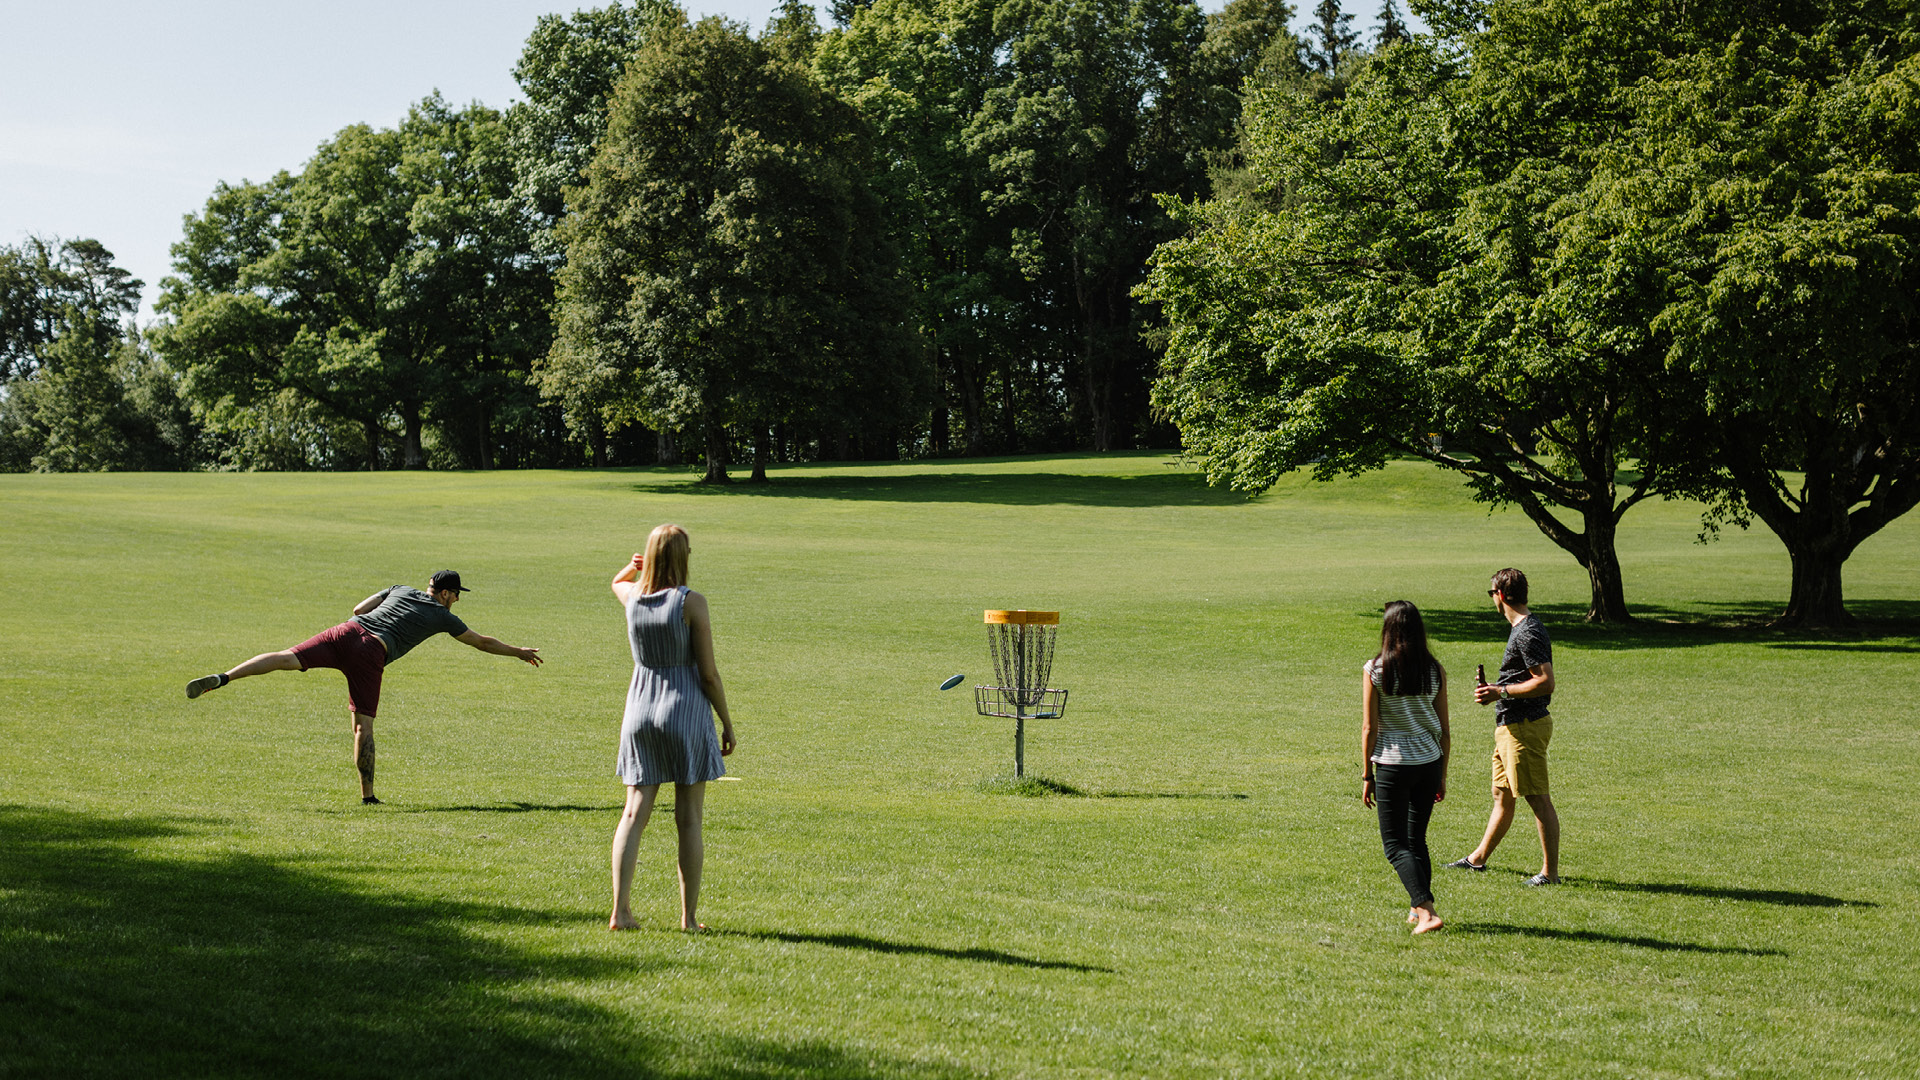 Un groupe joue au discgolf sur le Parc Pré Vert. Une personne est en train de lancer le frisbee.